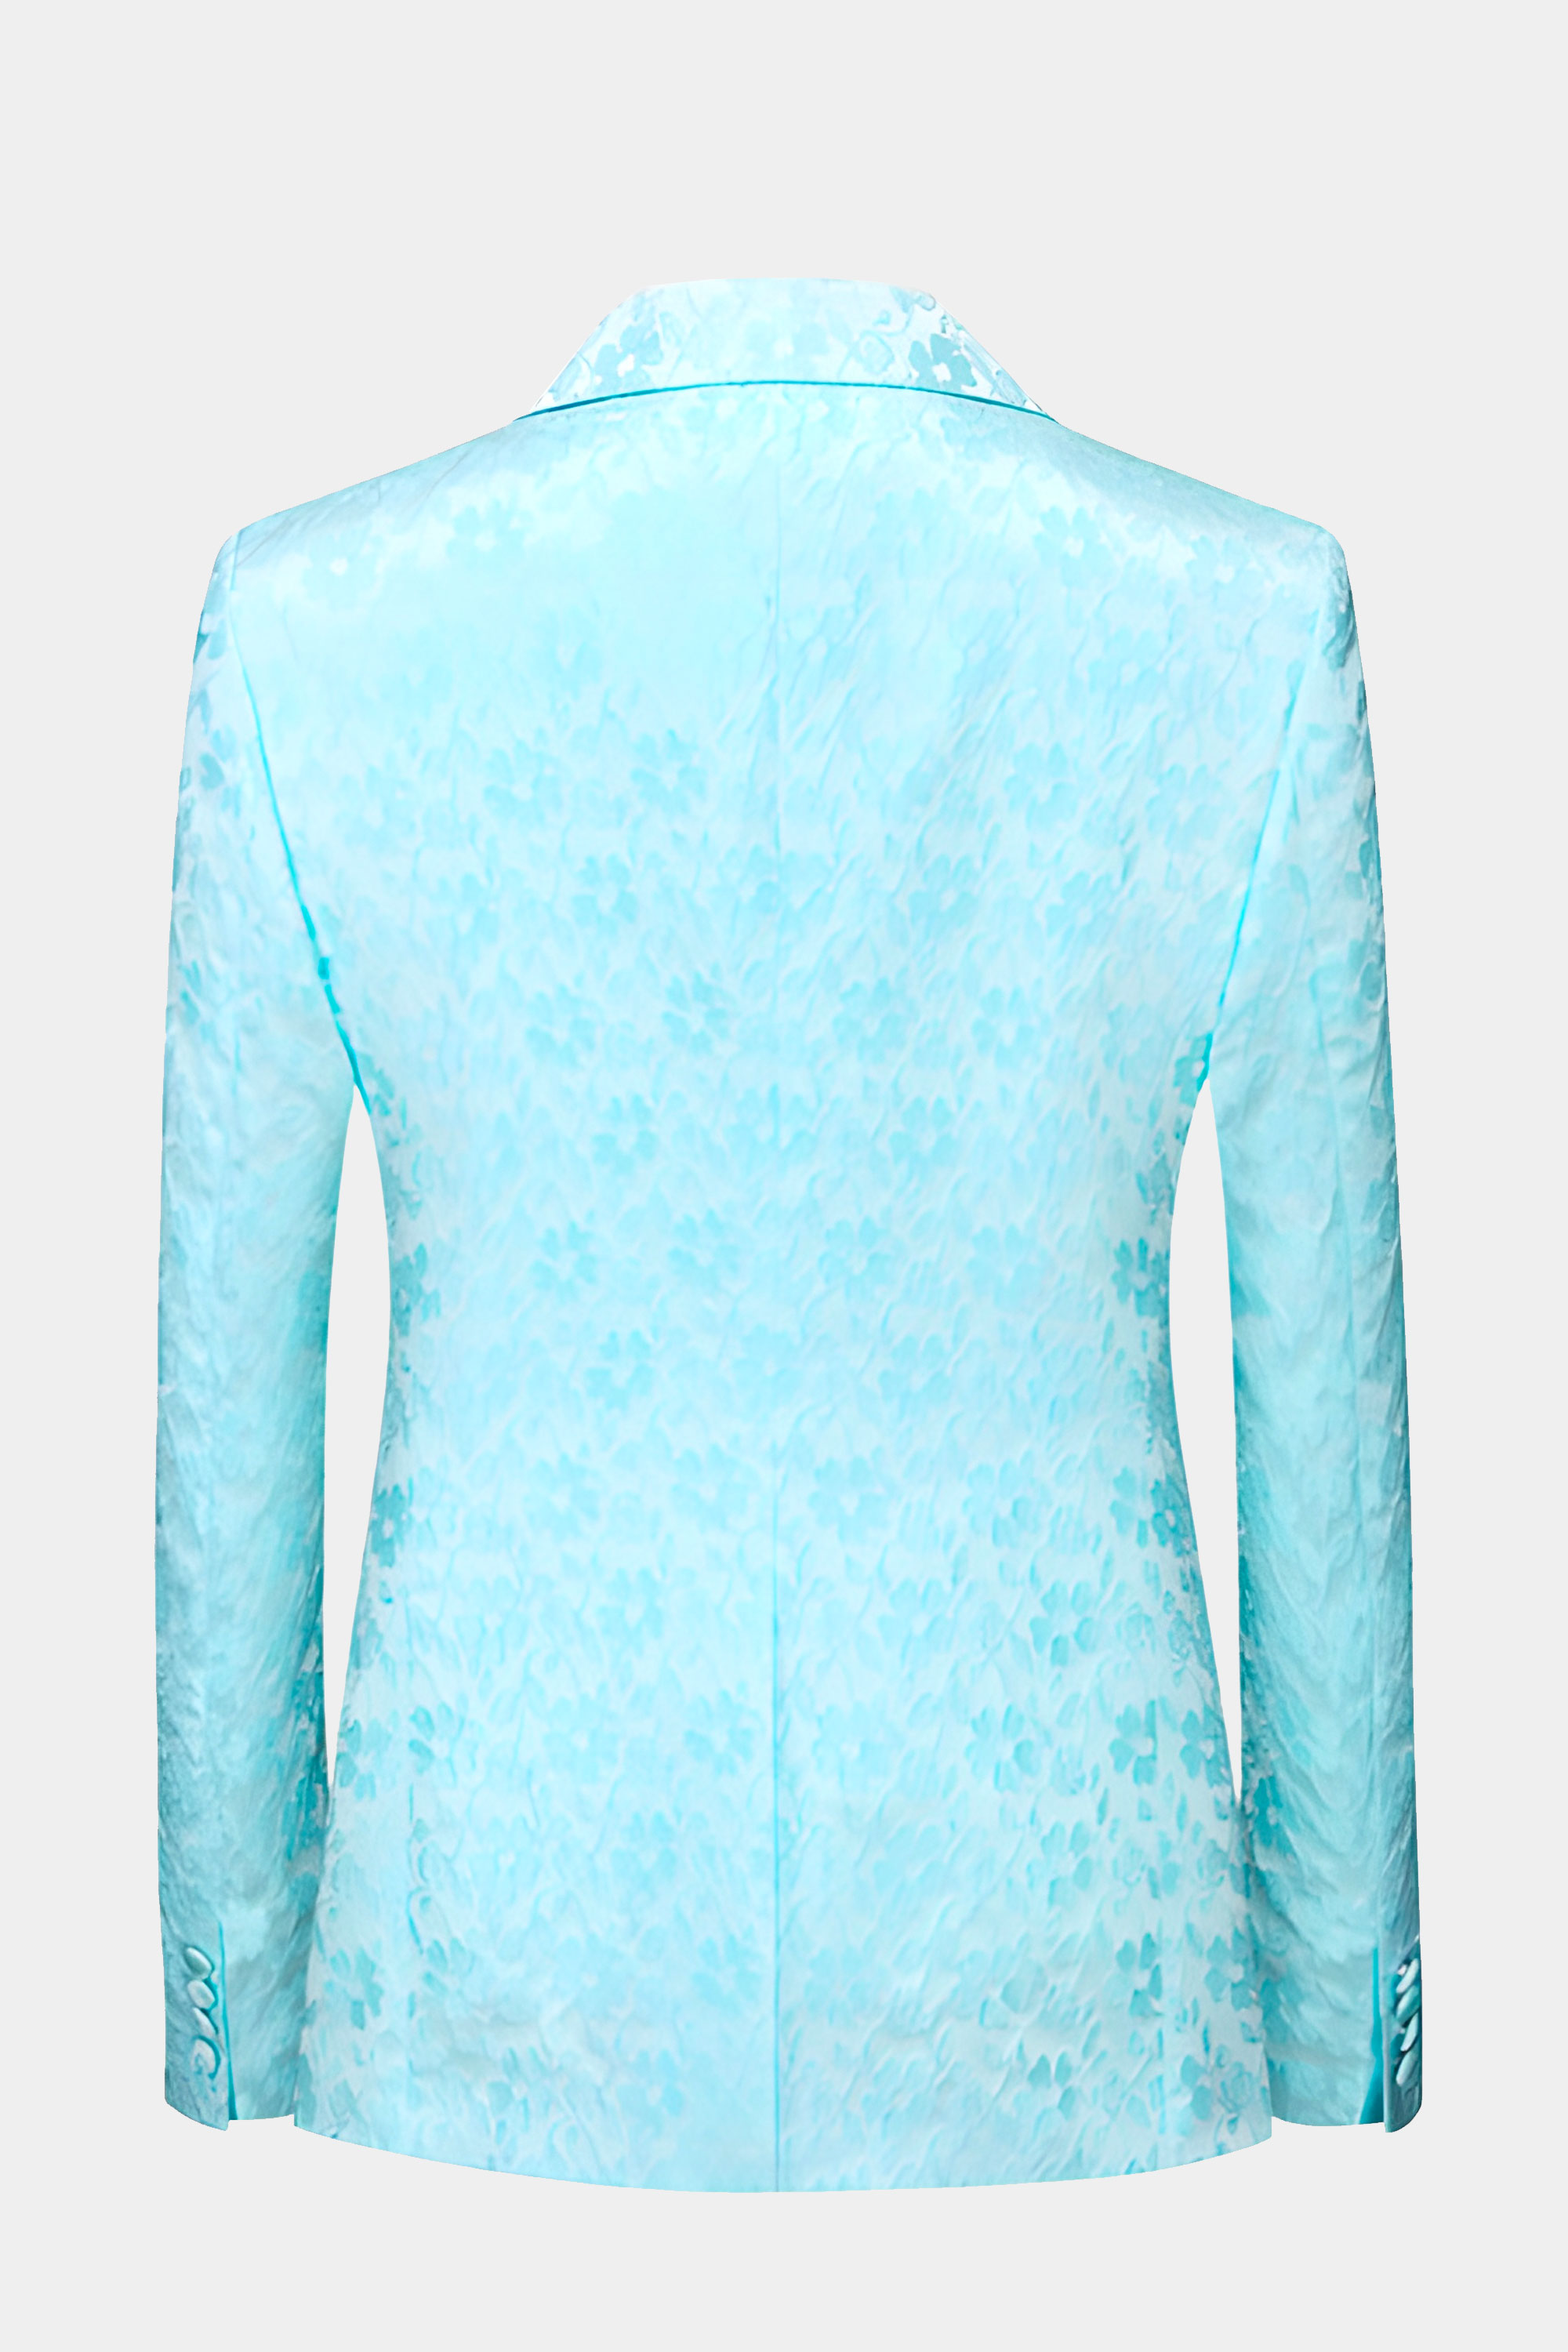 Pale Turquoise Suit - 3 Piece | Gentleman's Guru